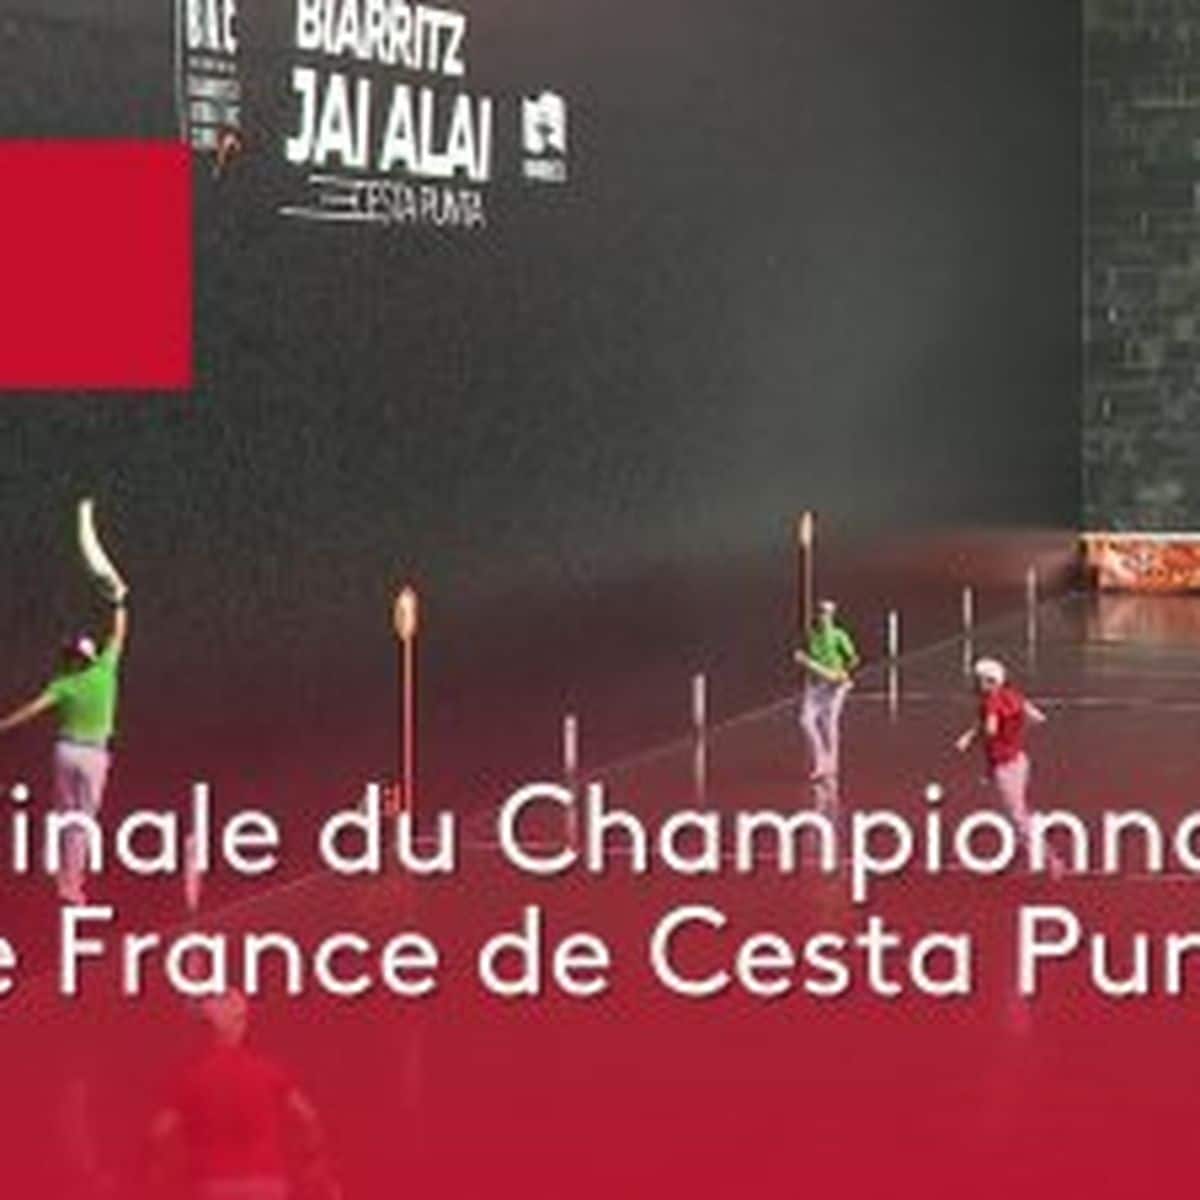 , REPLAY. Pelote : les frères Sorozaba de Biarritz gagnent la finale du championnat de France de Cesta face à Saint-Jean-de-Luz